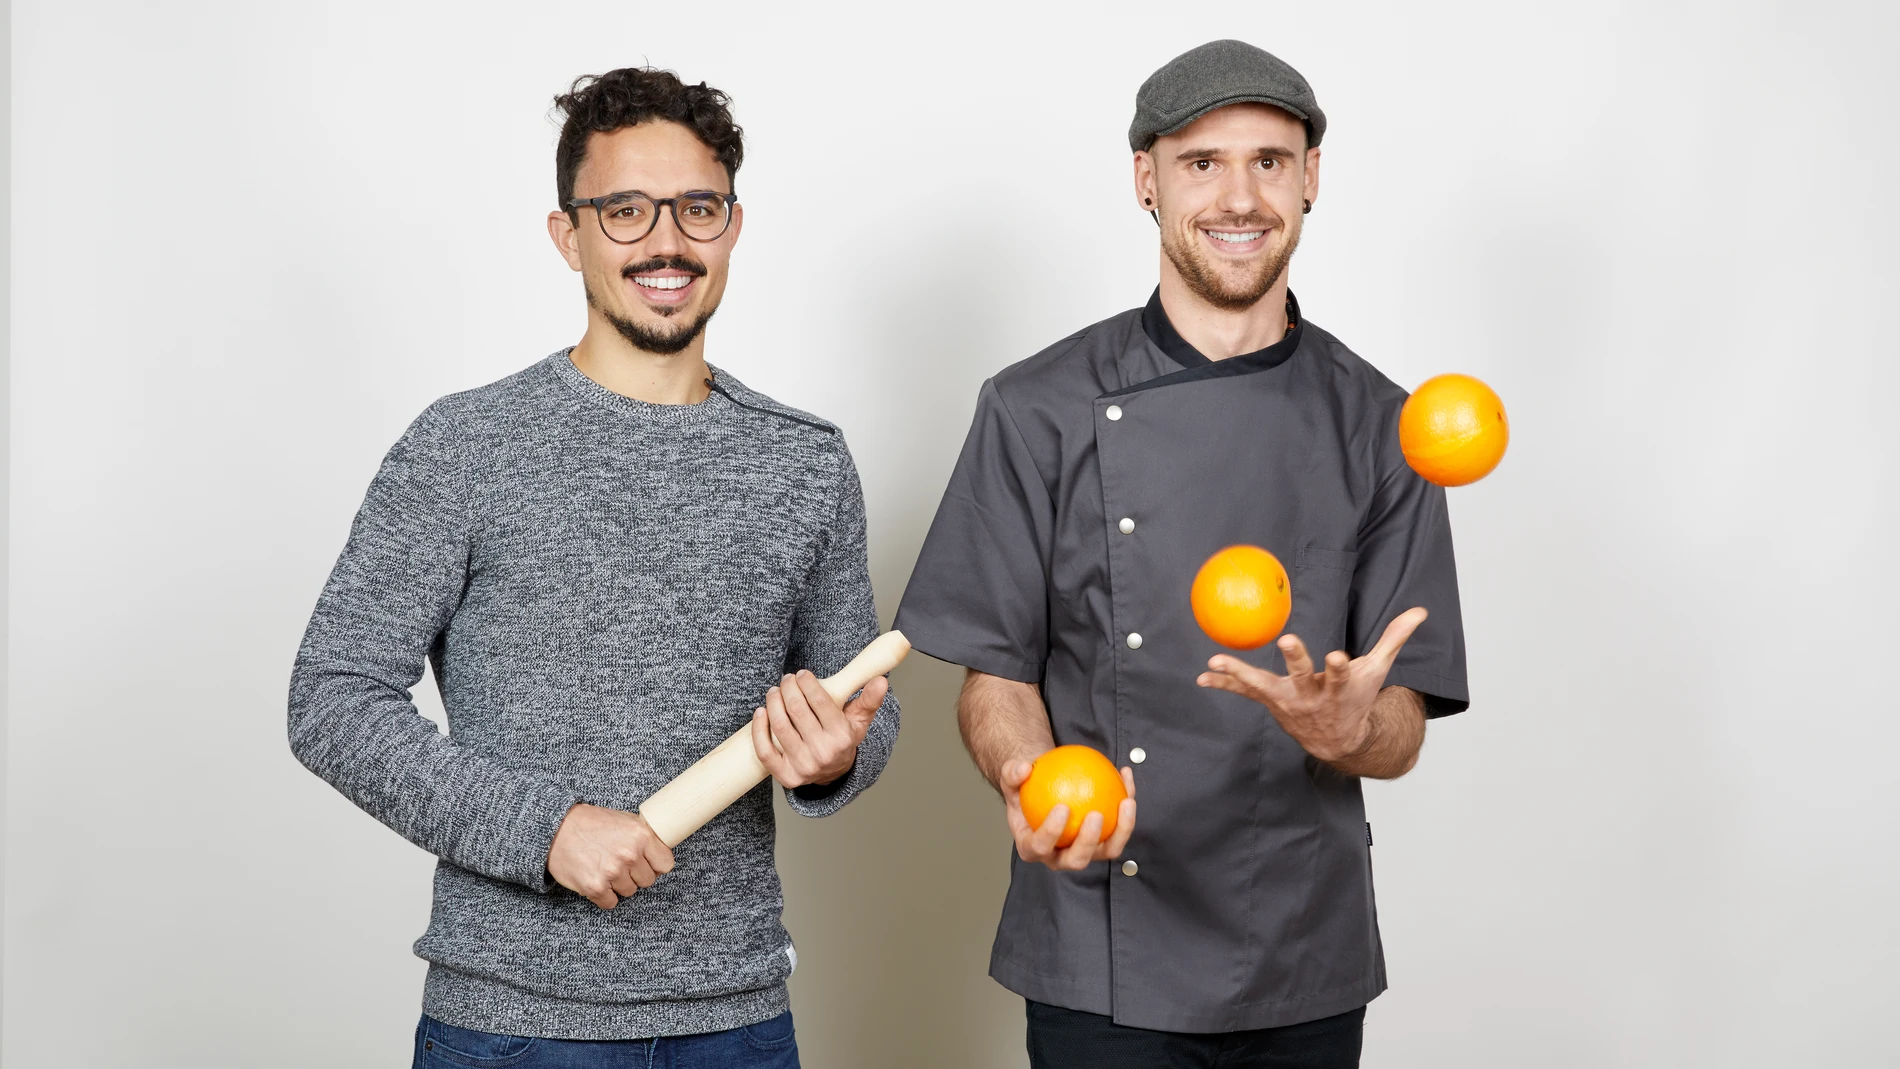 Carlos Ríos y David Guibert, autores del libro "Cocina comida real"